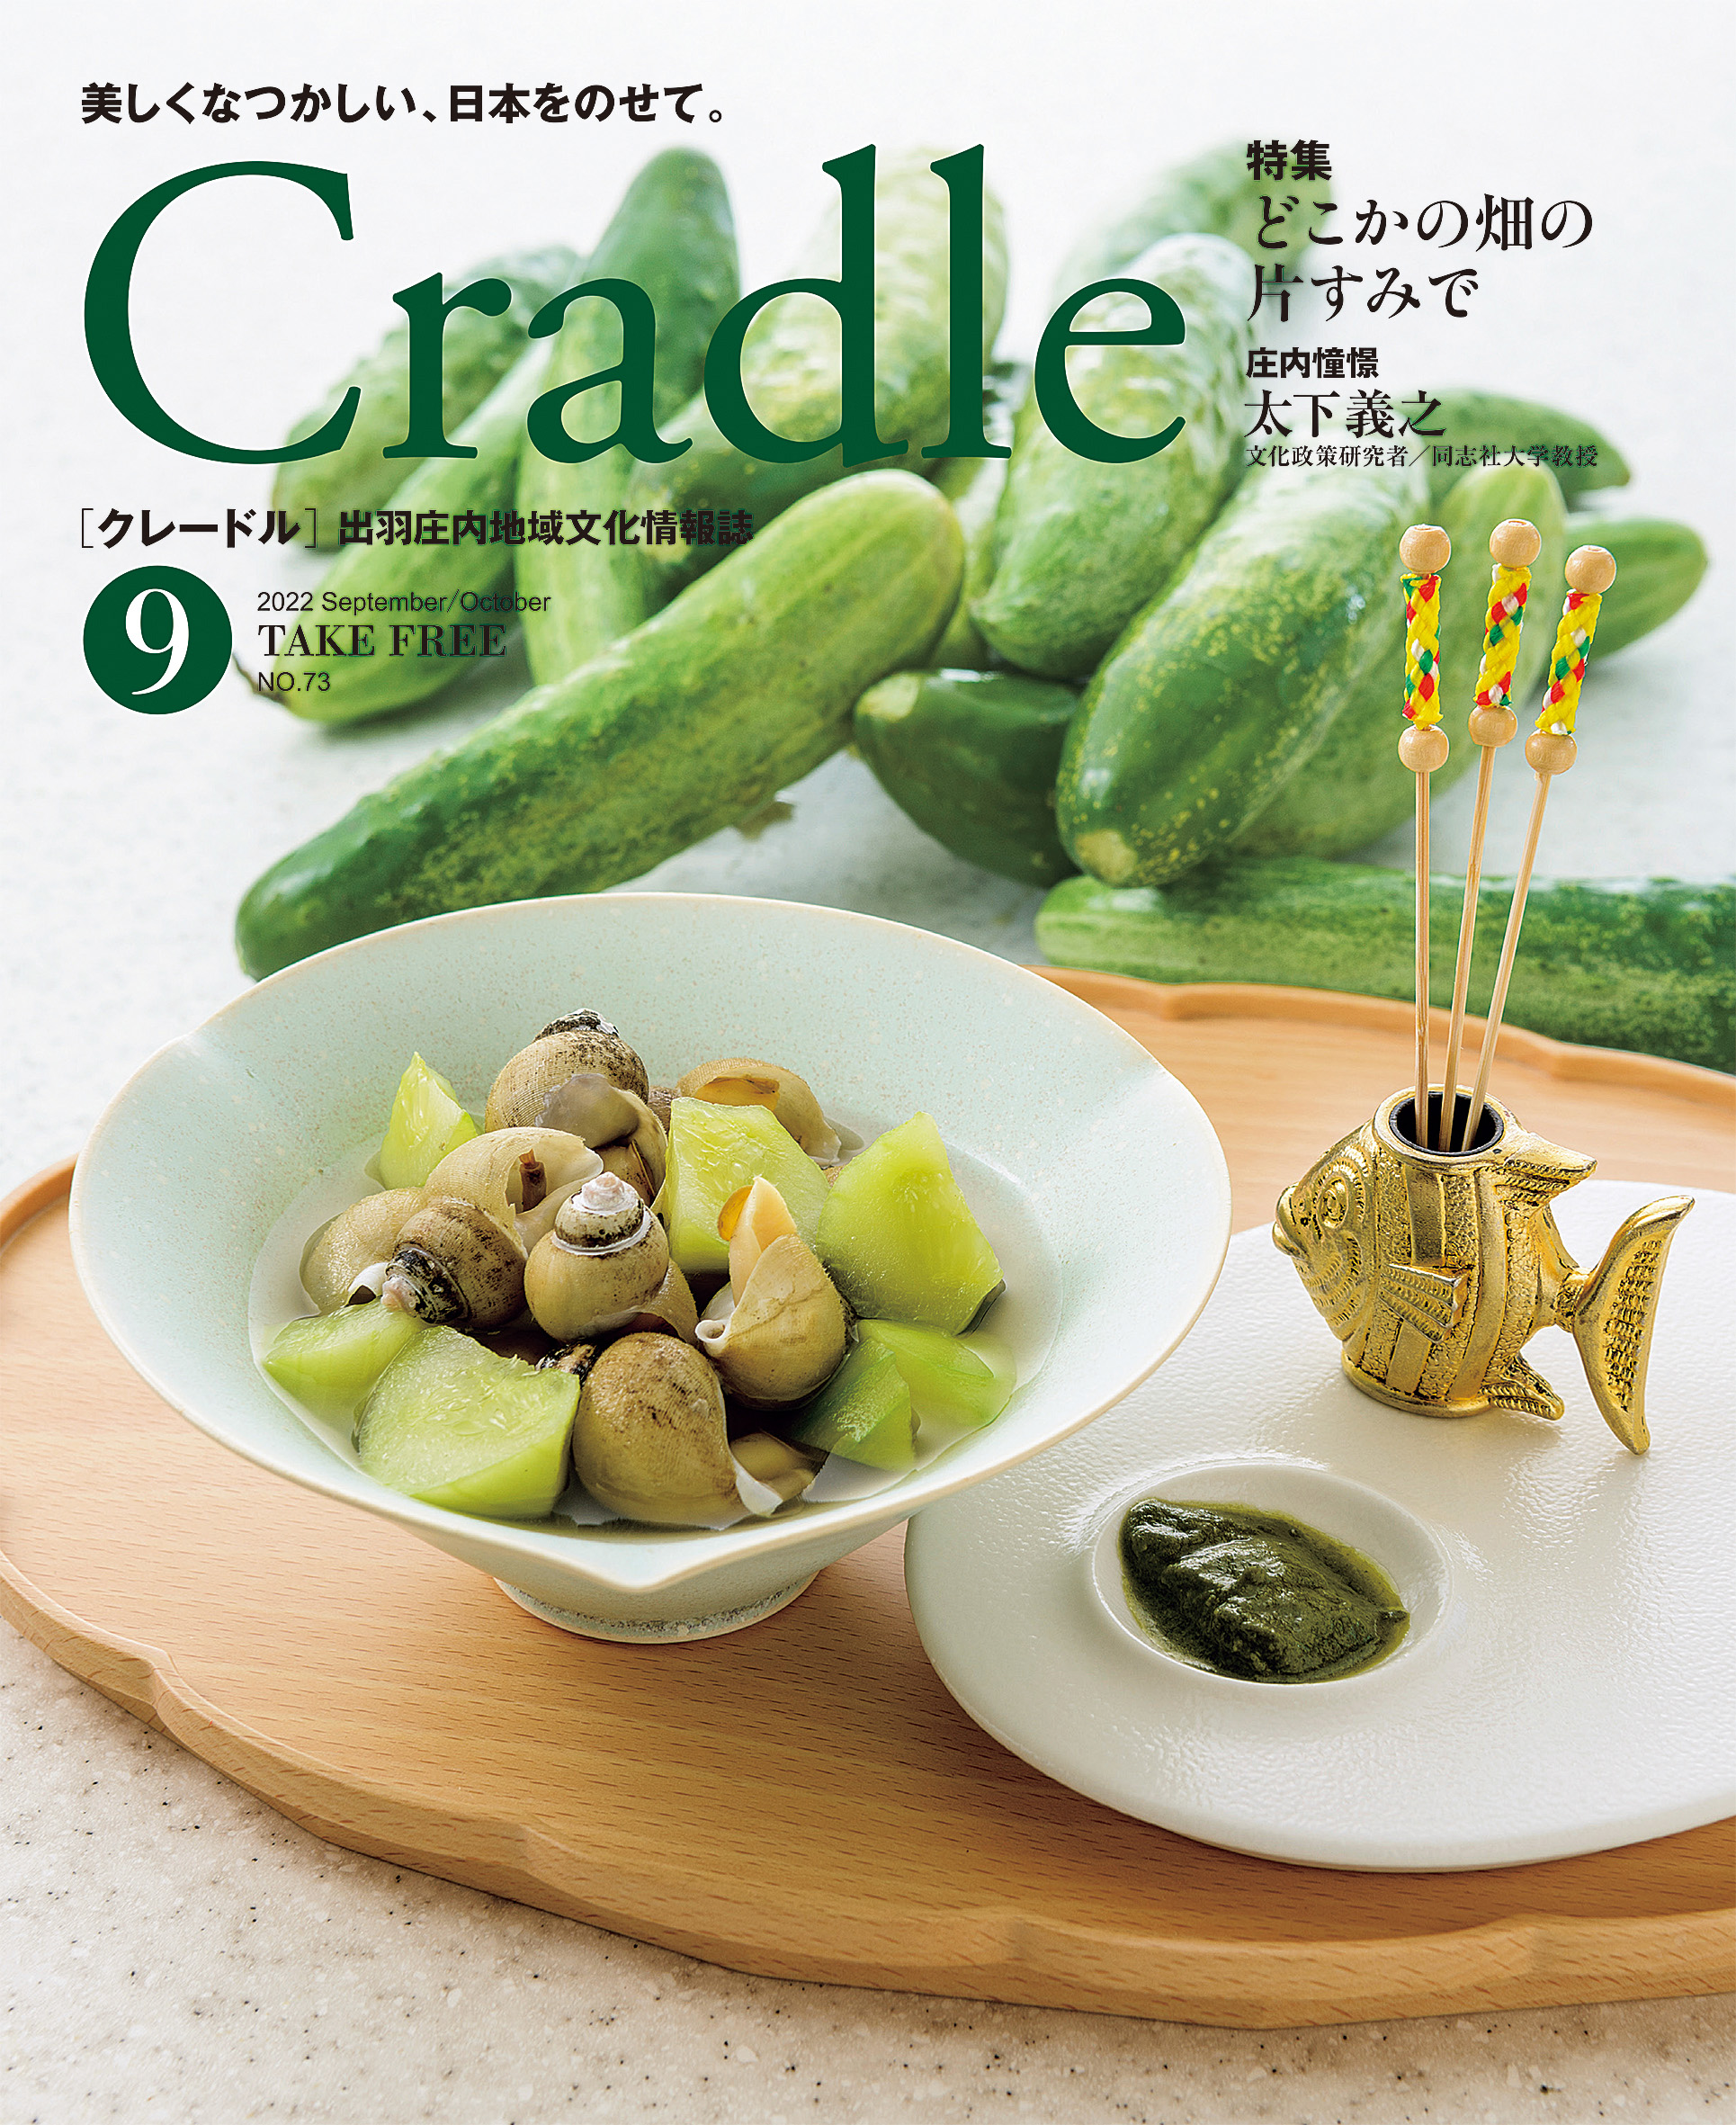 出羽庄内地域文化情報誌「Cradle」